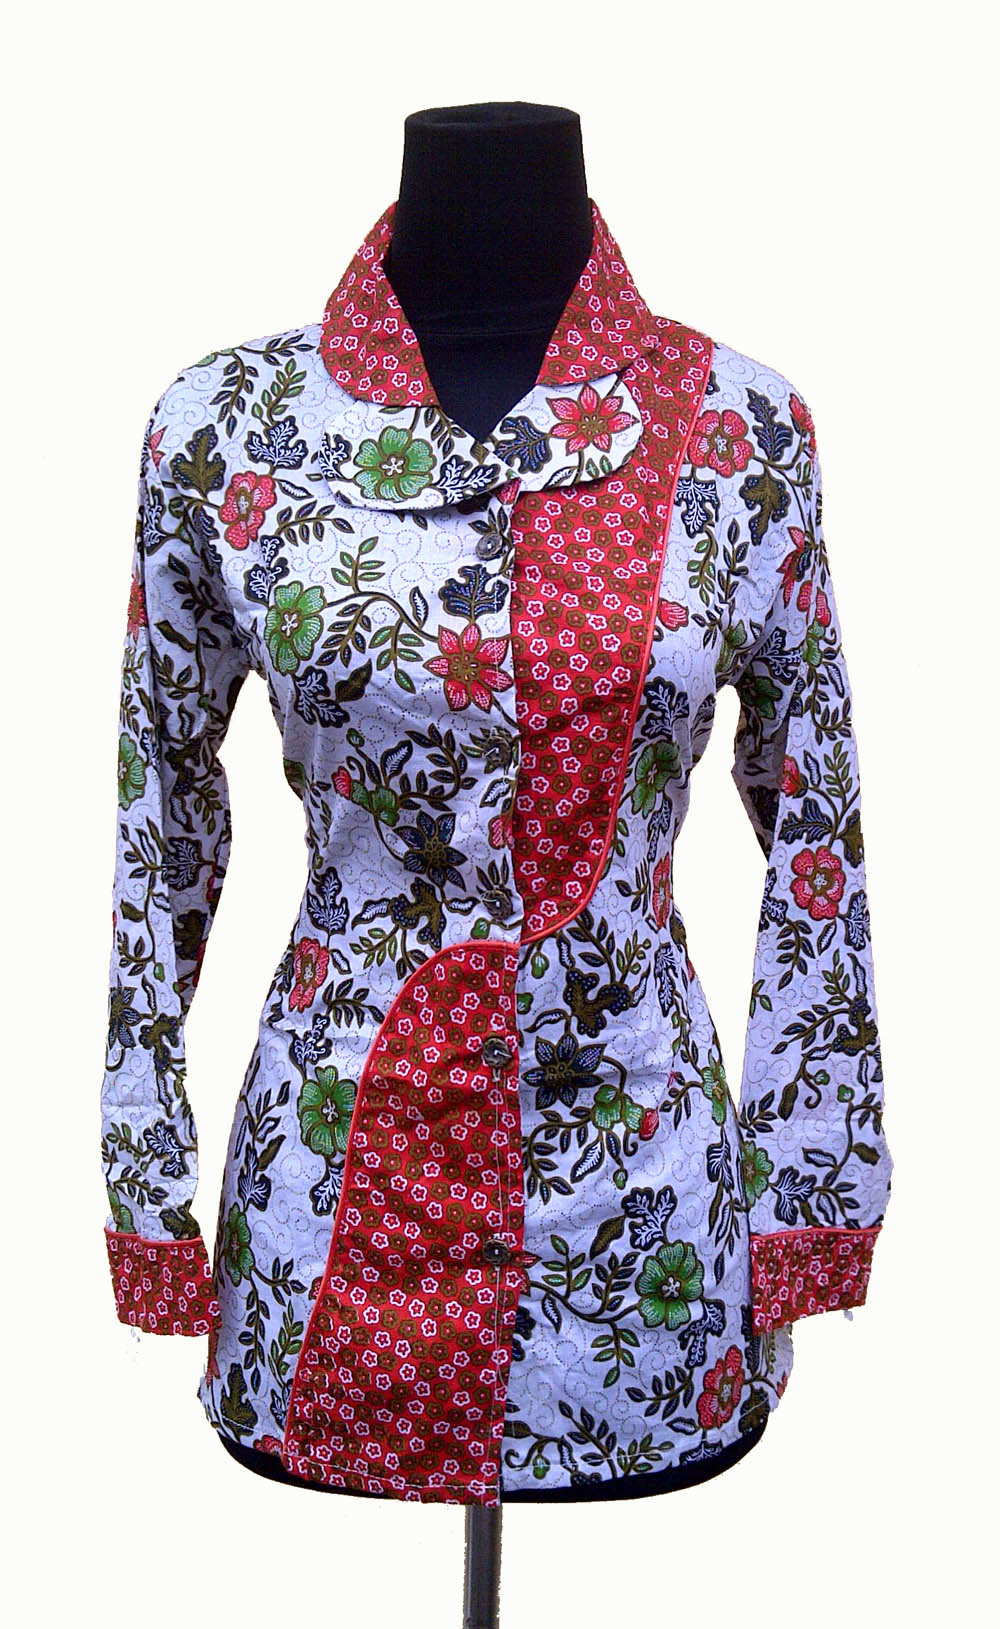 Baju Batik Modern Pekalongan Kain Batik Bunga Mawar Pusat